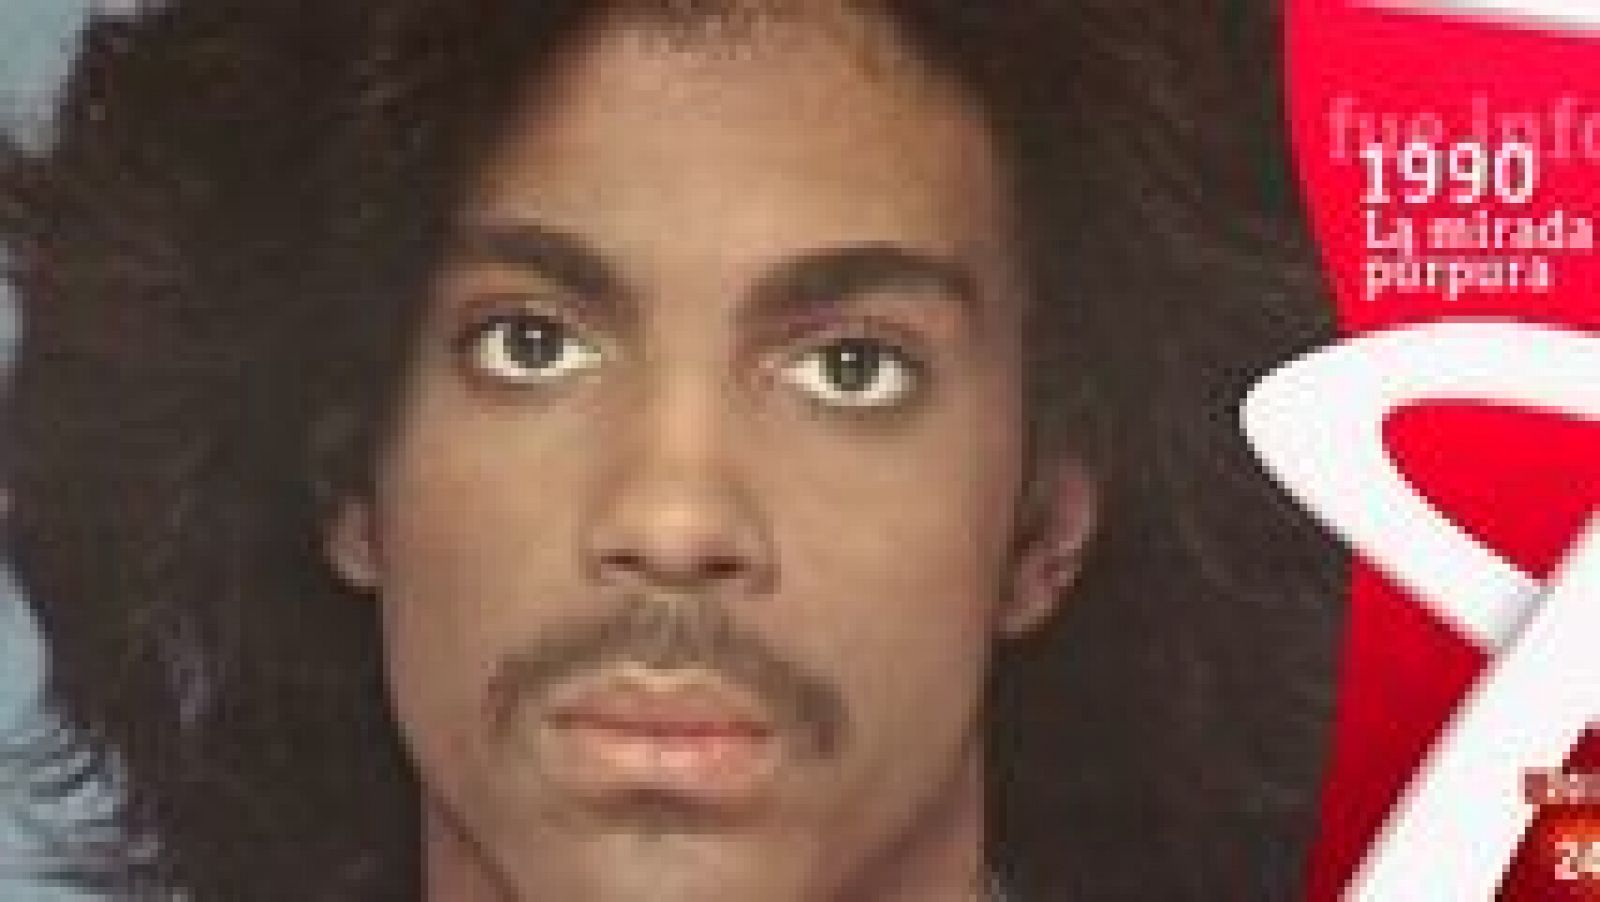 Fue Informe - La mirada púrpura. Prince (1990) - ver ahora